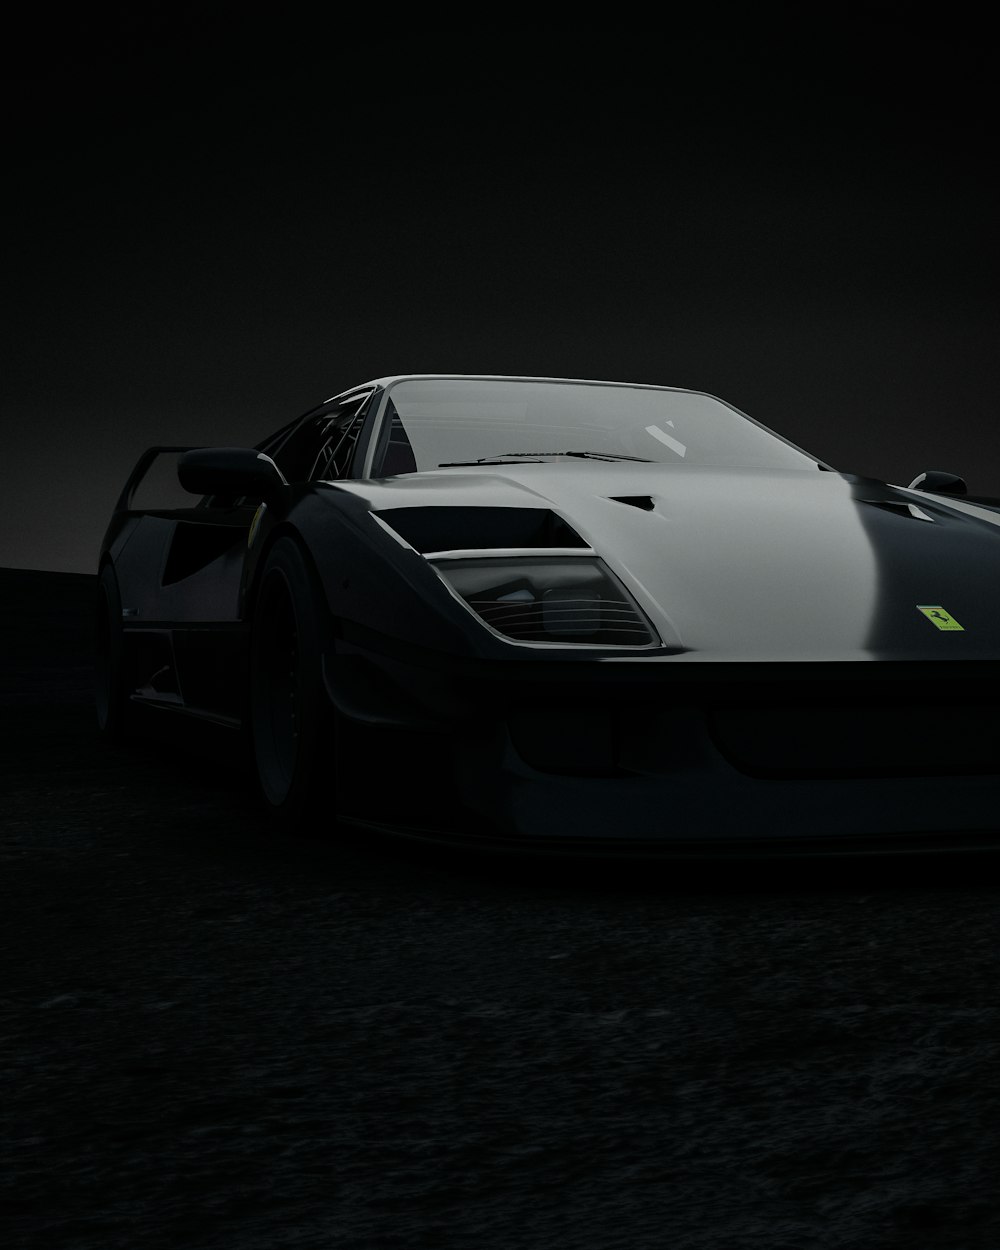 Une voiture de sport en noir et blanc dans l’obscurité